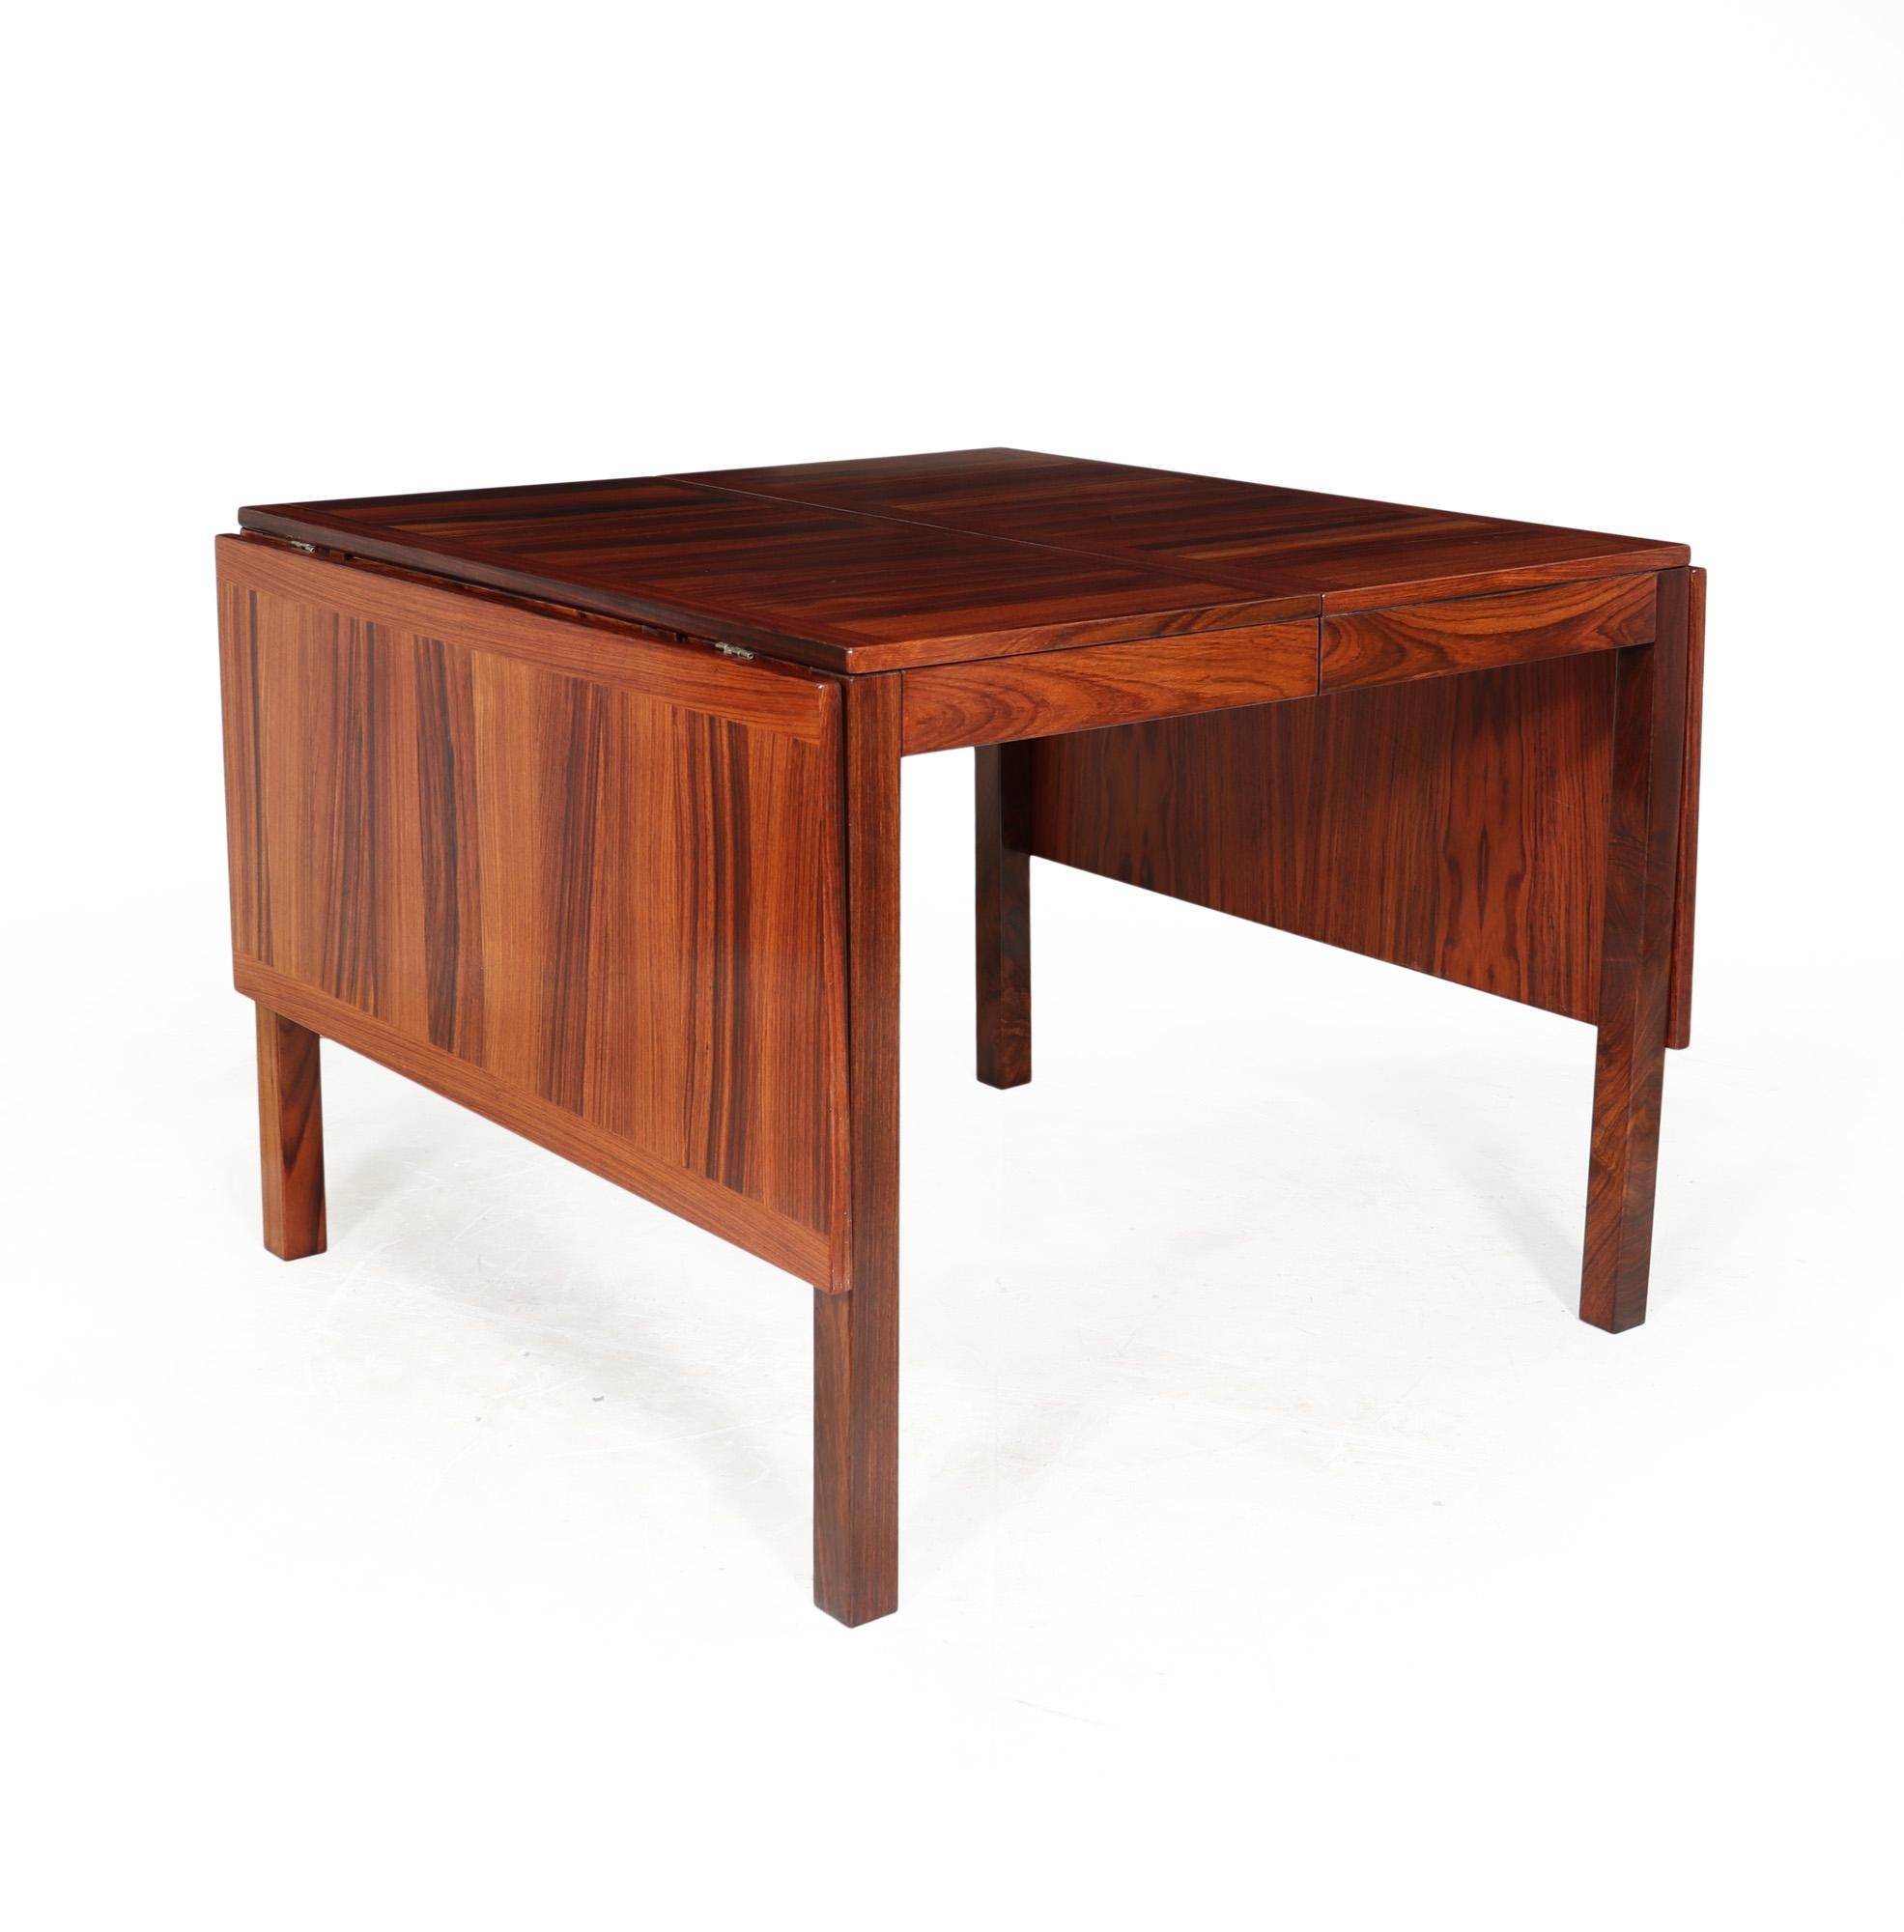 TABLE DE SALLE À MANGER DU MILIEU DU SIÈCLE
Table de salle à manger du milieu du siècle conçue par Vejle Stole au Danemark dans les années 1970 en bois de rose de Condit. Il s'agit d'un exemple rare de cette table qui peut accueillir jusqu'à 12